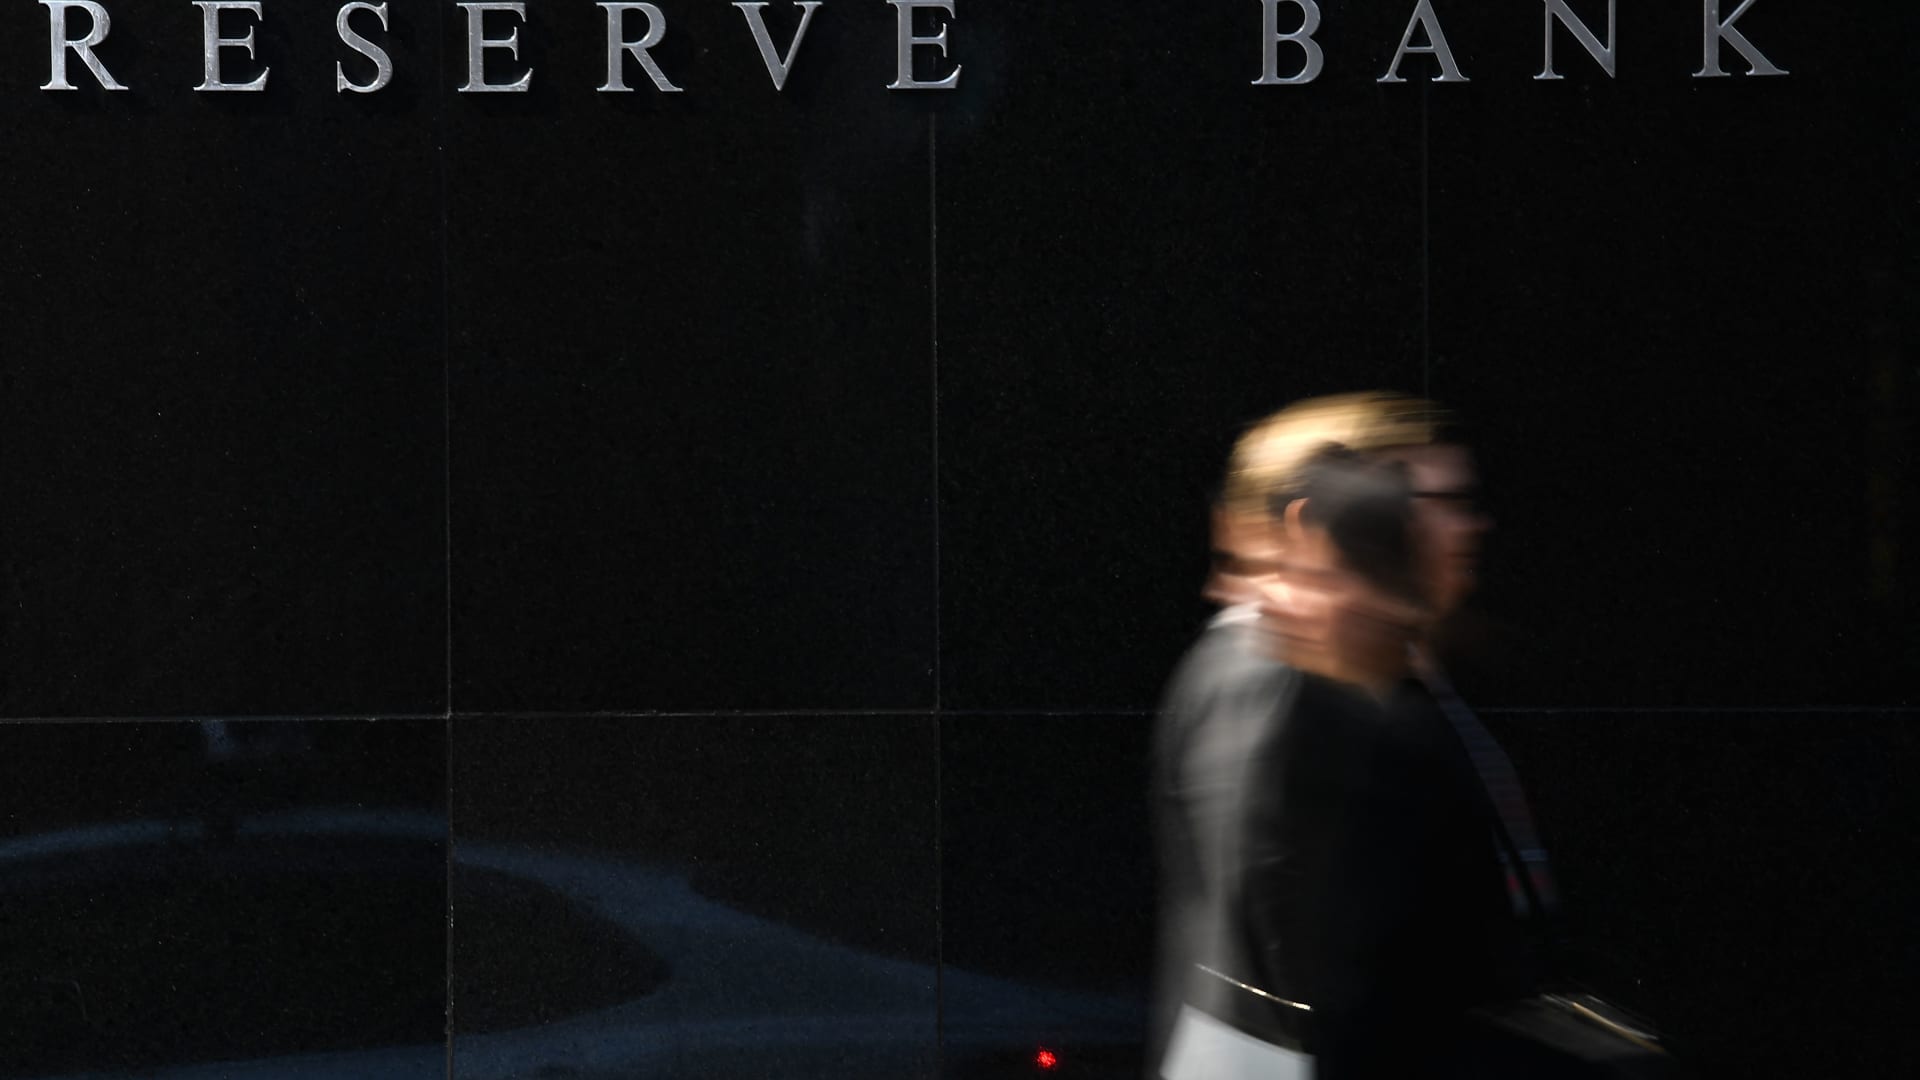 Reserve Bank of Australia zvyšuje úrokové sazby o 50 bazických bodů